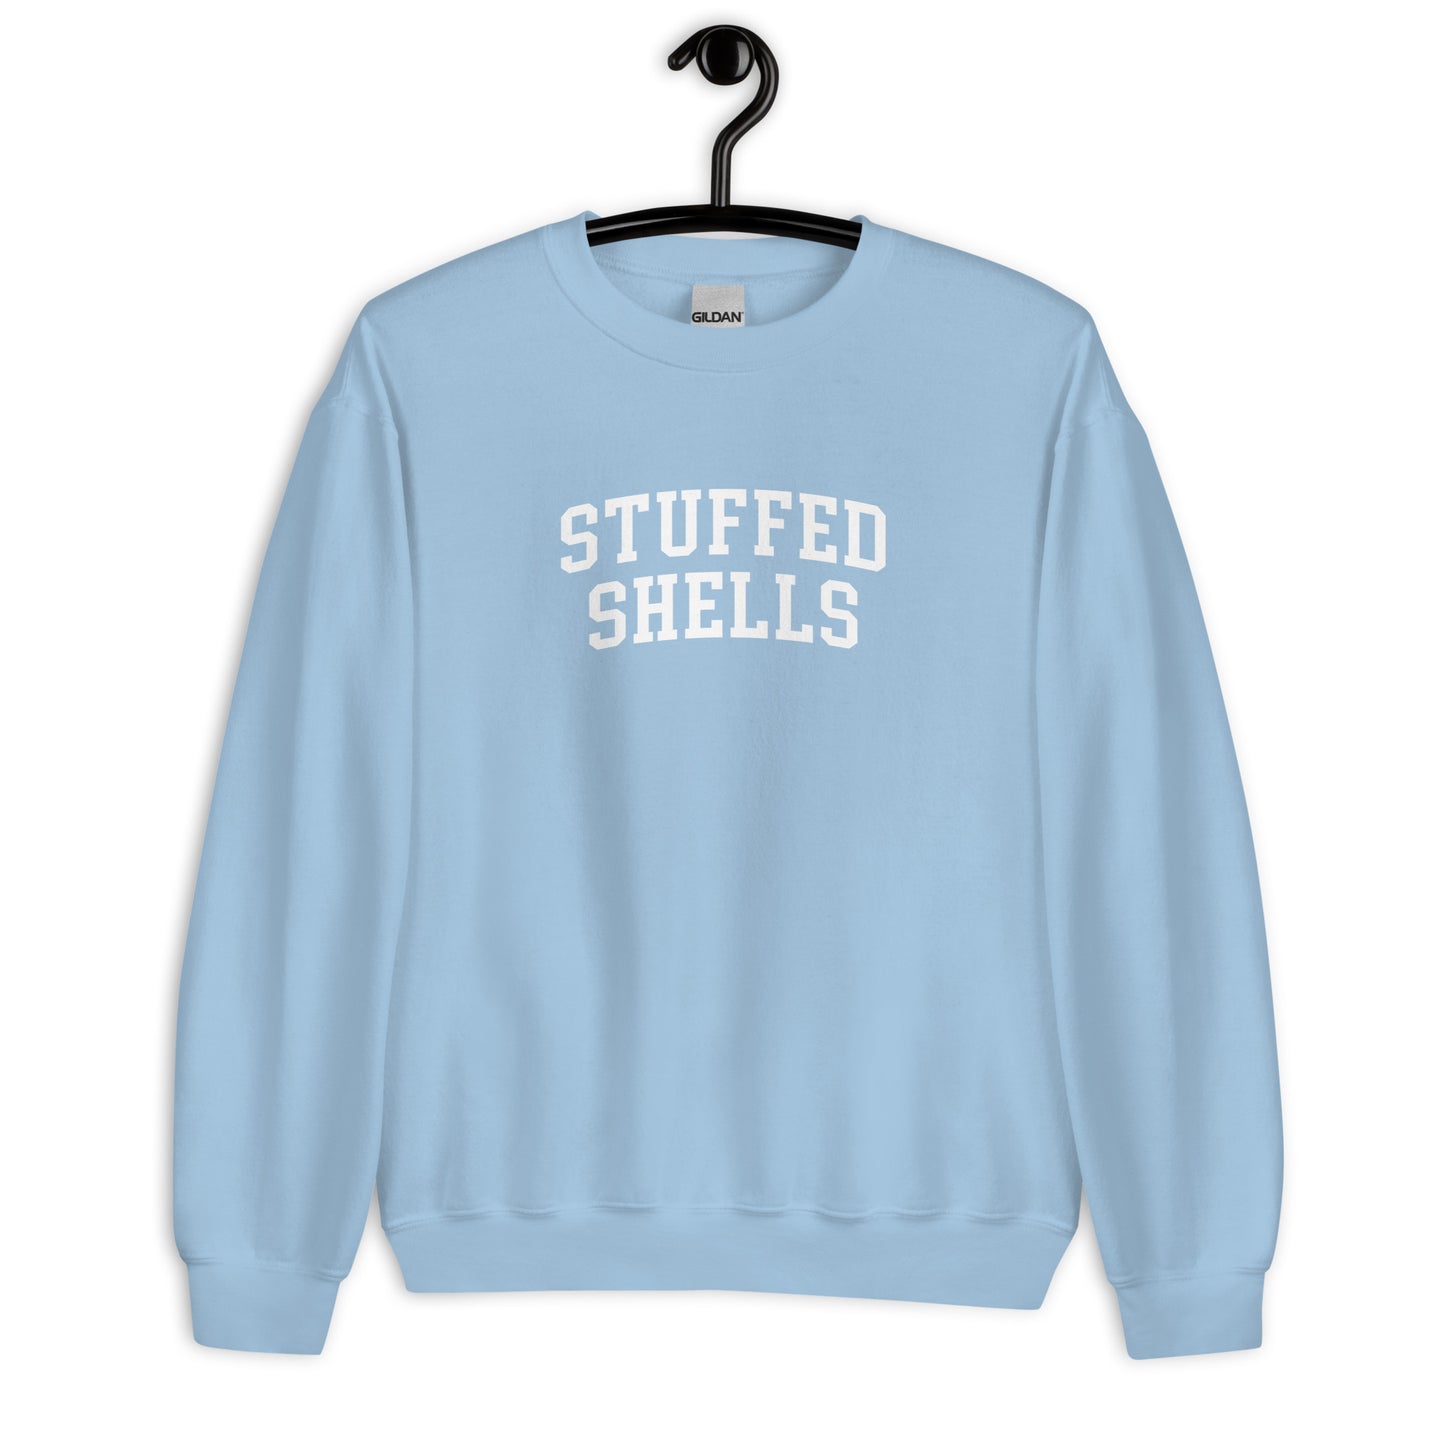 Stuffed Shells Sweatshirt - Arched Font